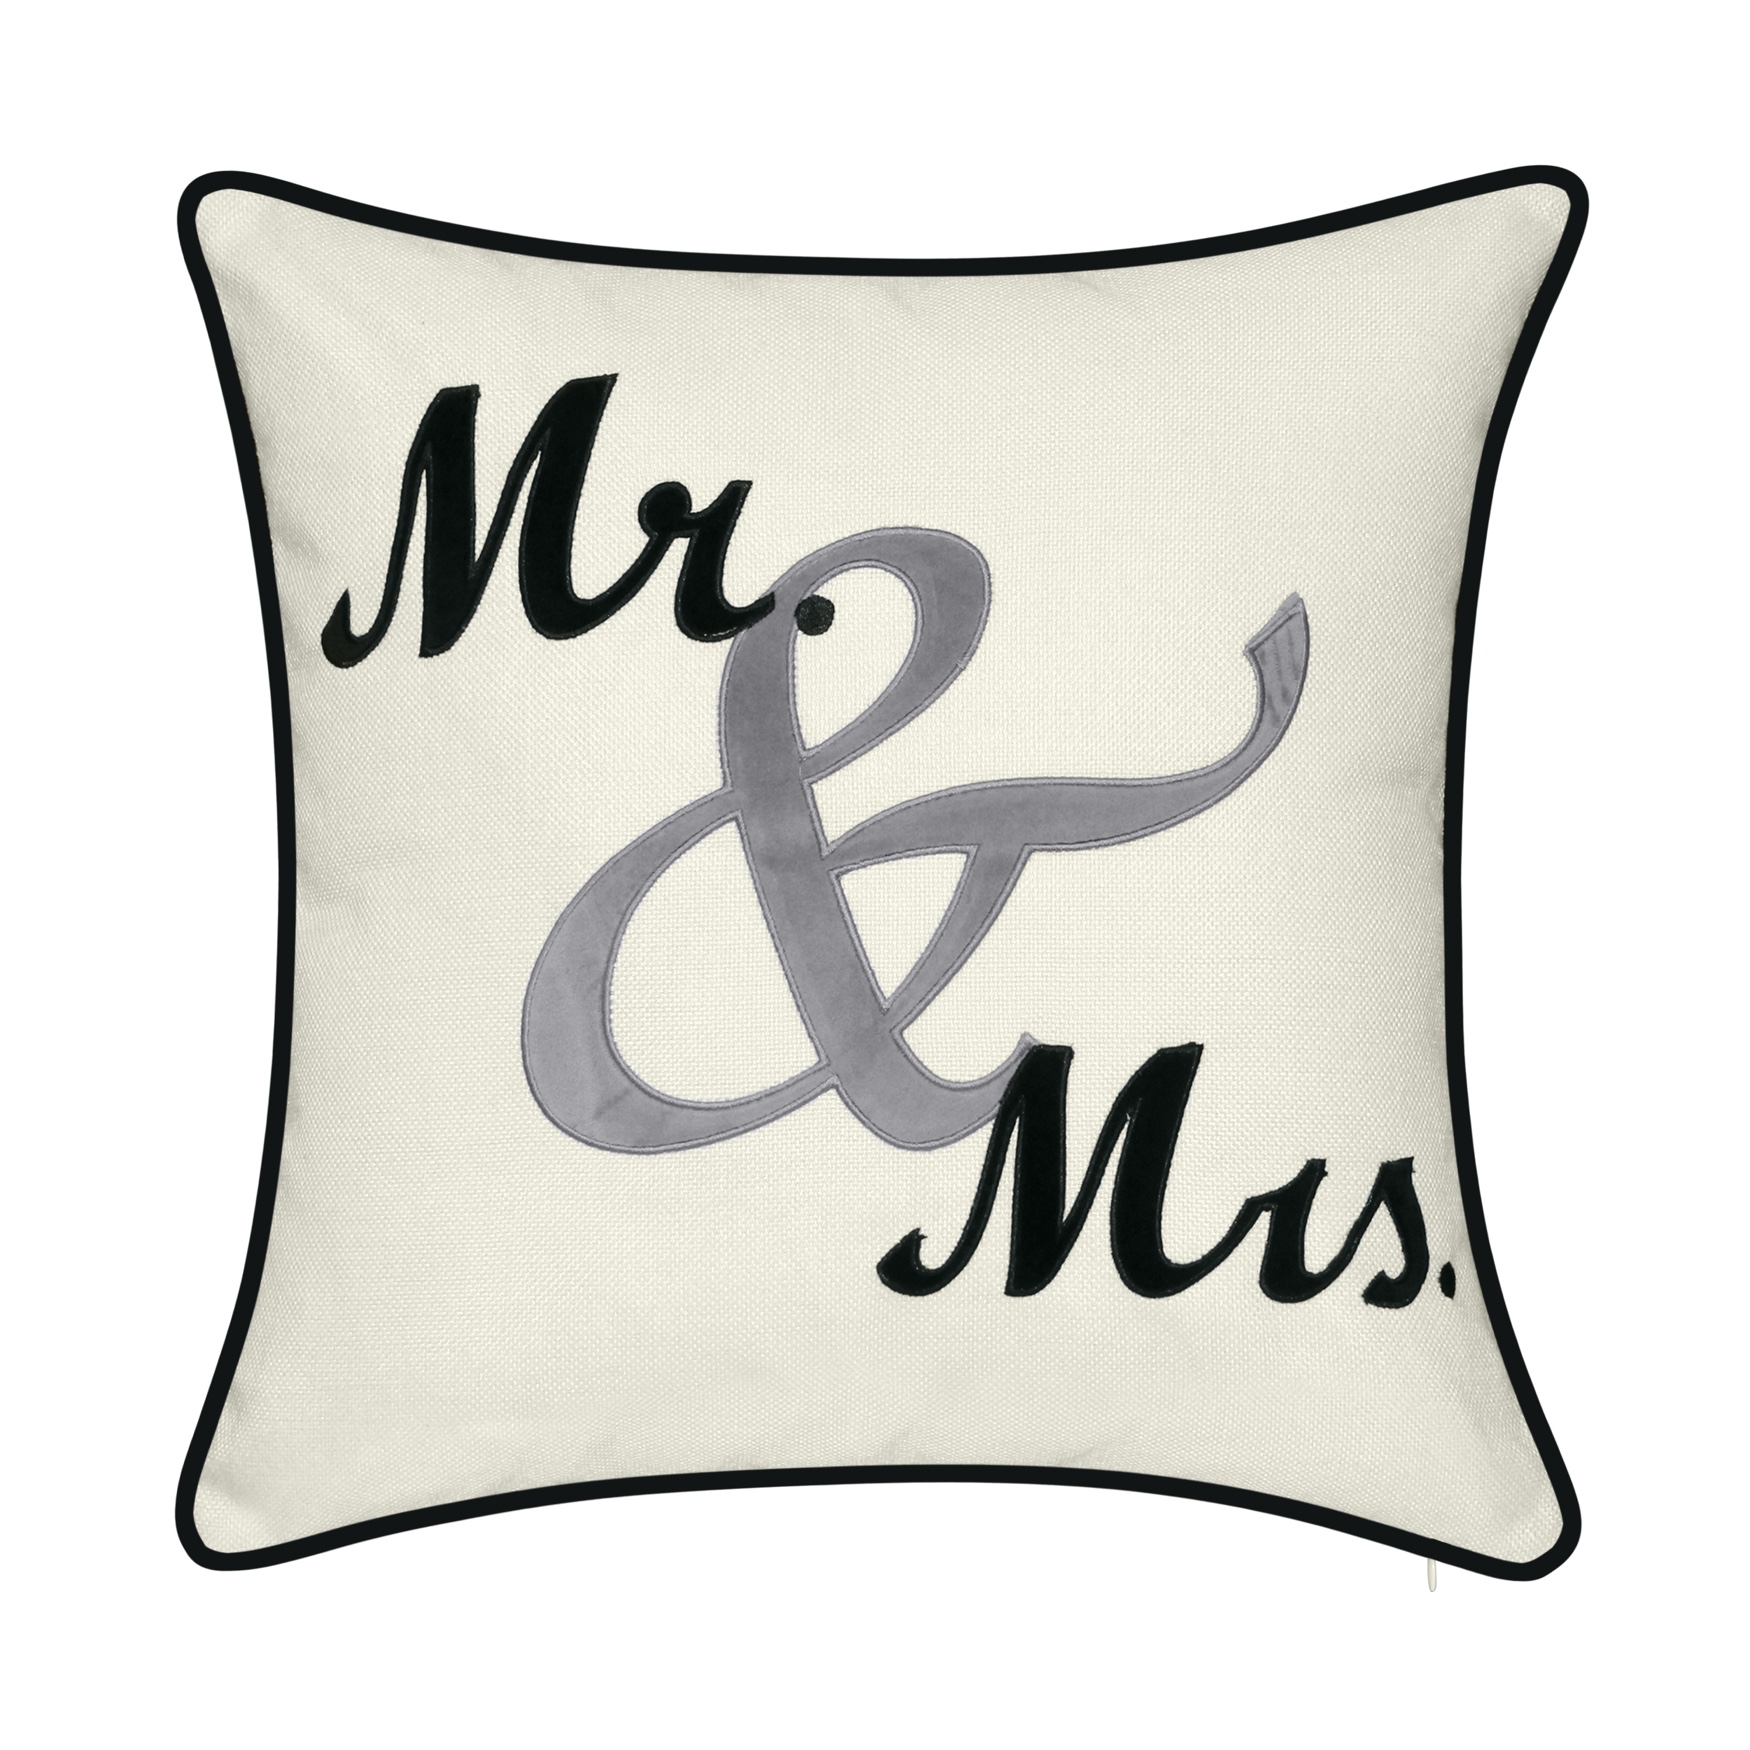 Celebrations &quot;&quot;Mr. & Mrs.&quot;&quot; Cursive Embroidered Applique Decorative Pillow , OYSTER